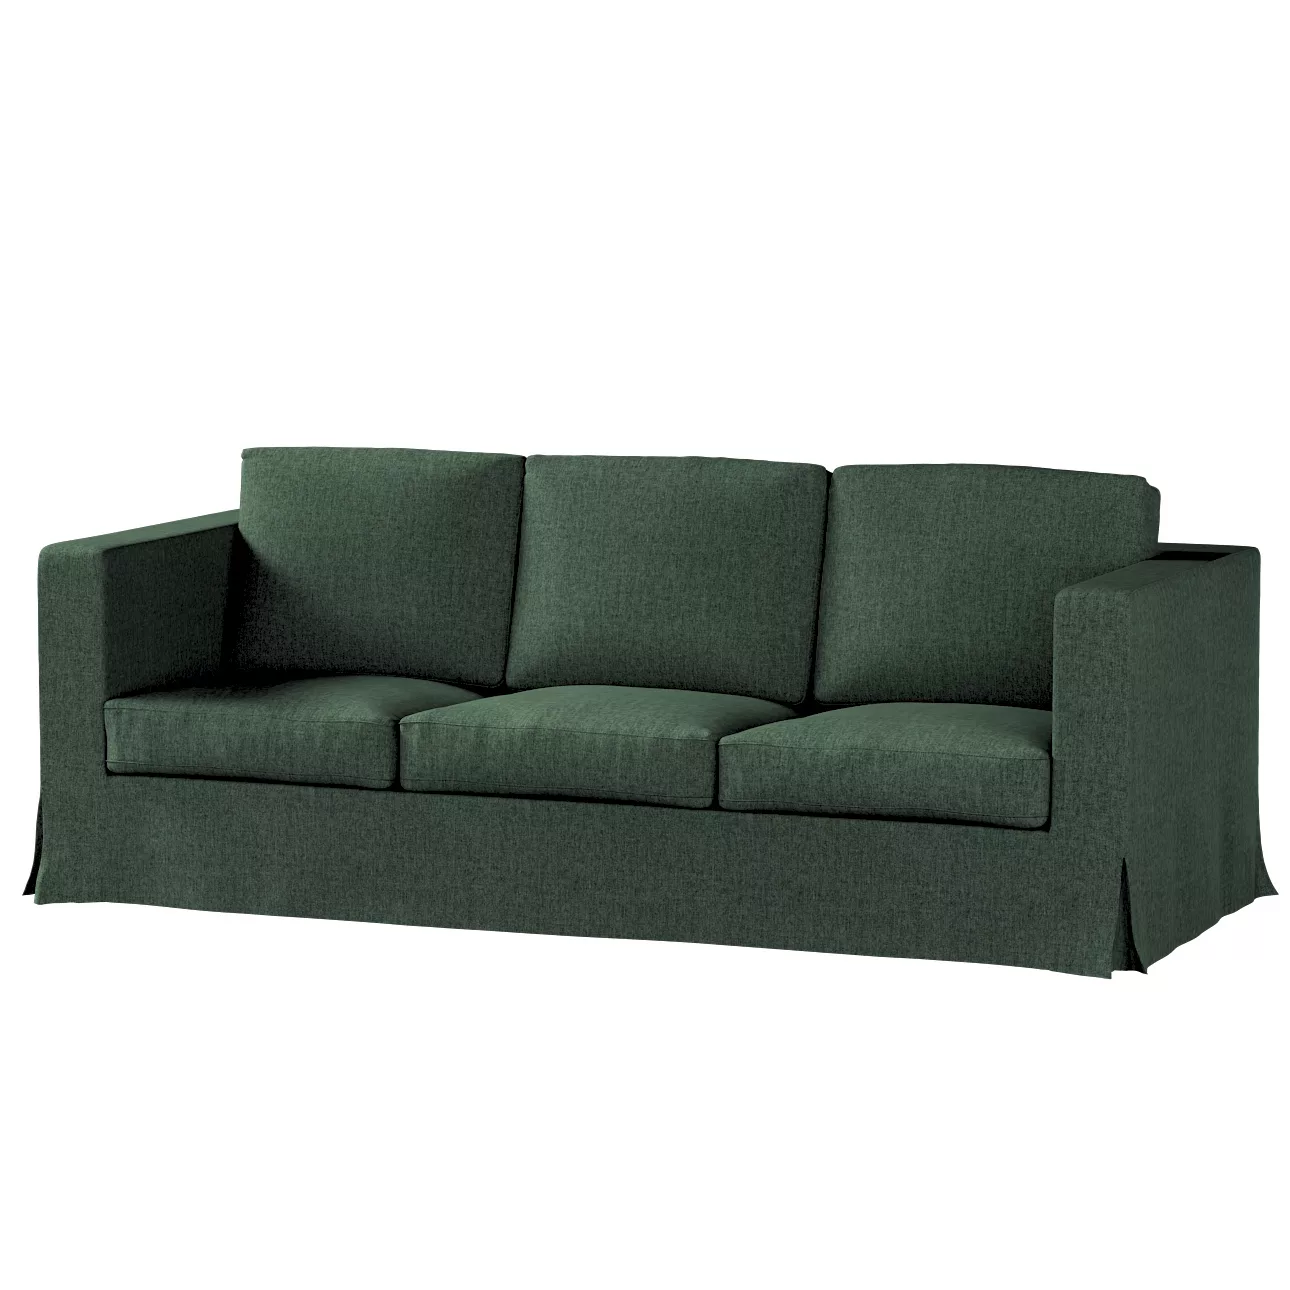 Bezug für Karlanda 3-Sitzer Sofa nicht ausklappbar, lang, dunkelgrün, Bezug günstig online kaufen